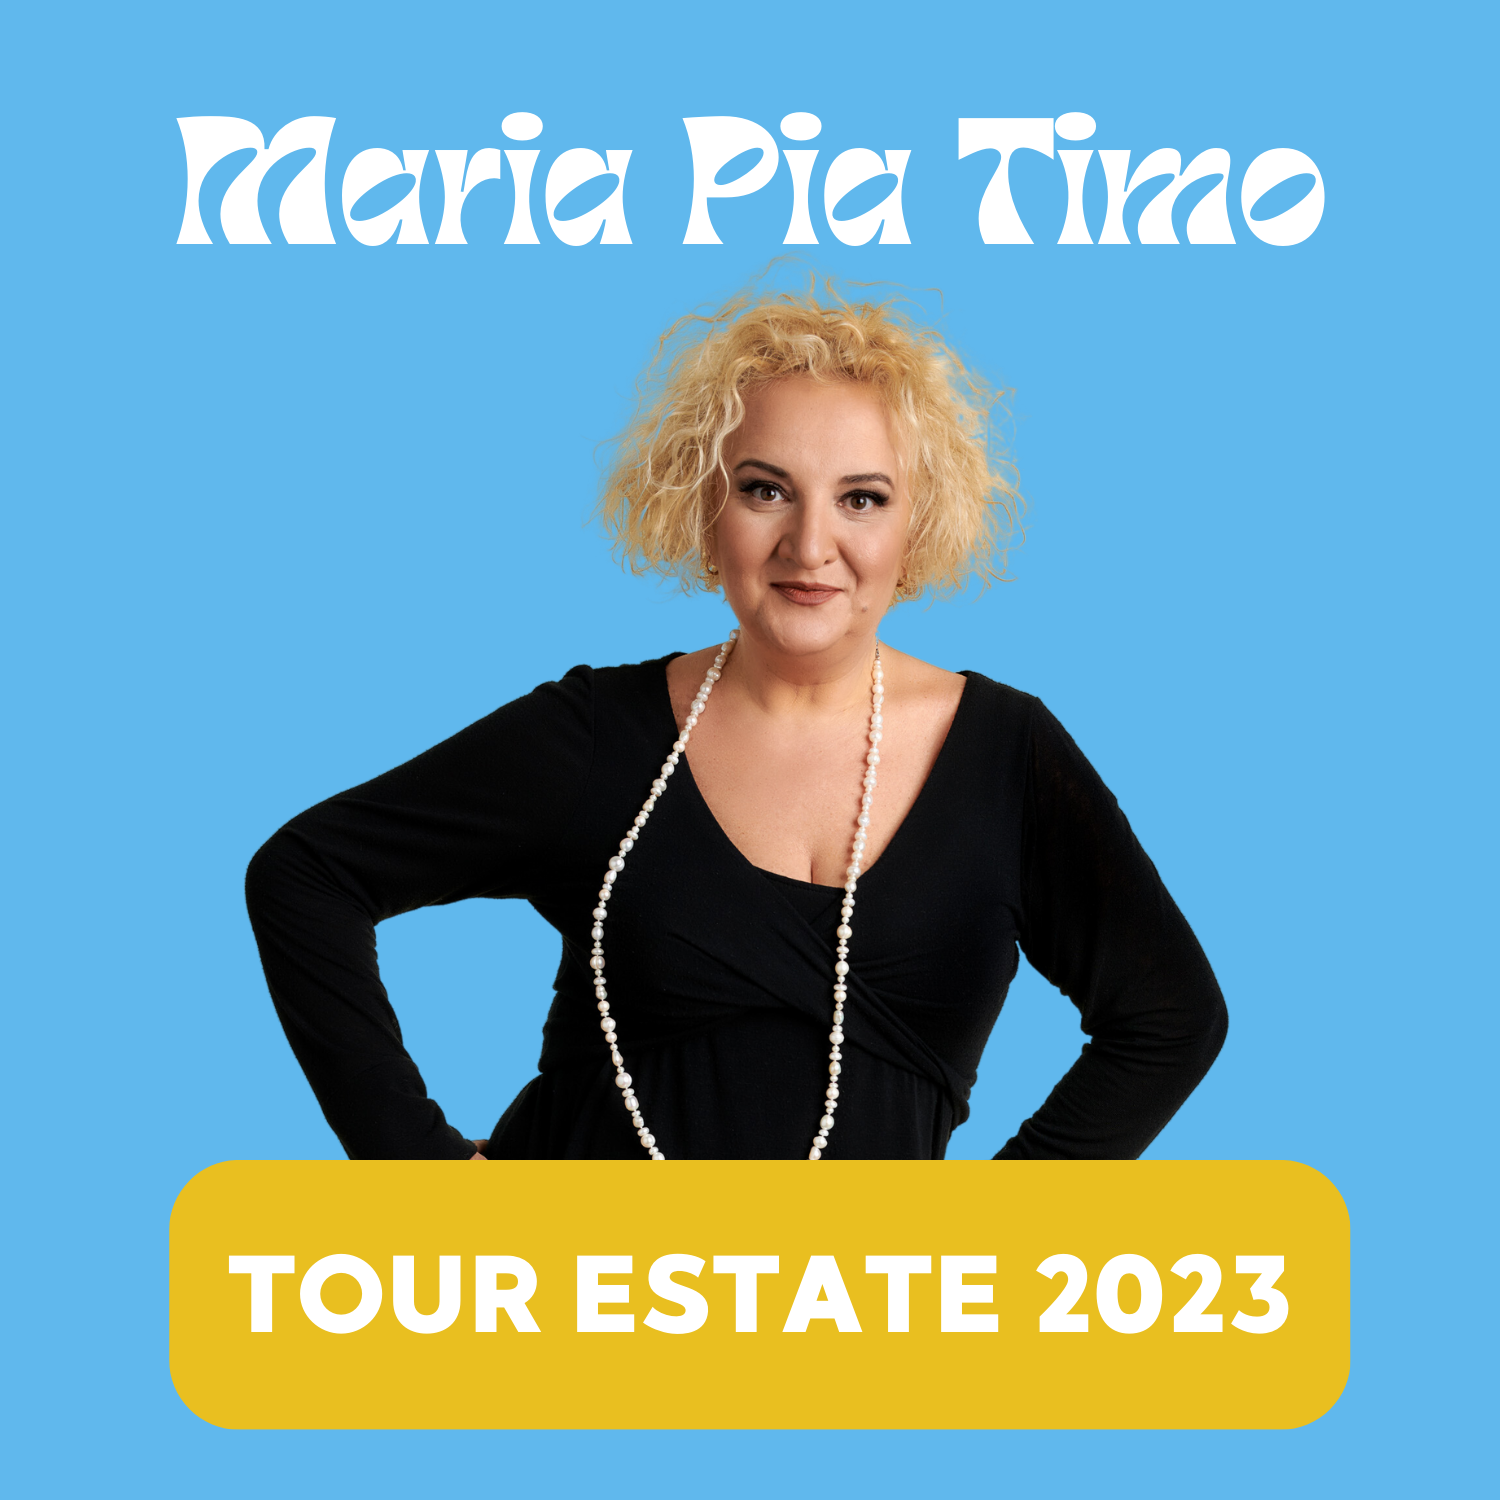 Tour Estate 2023 - Tutte le date